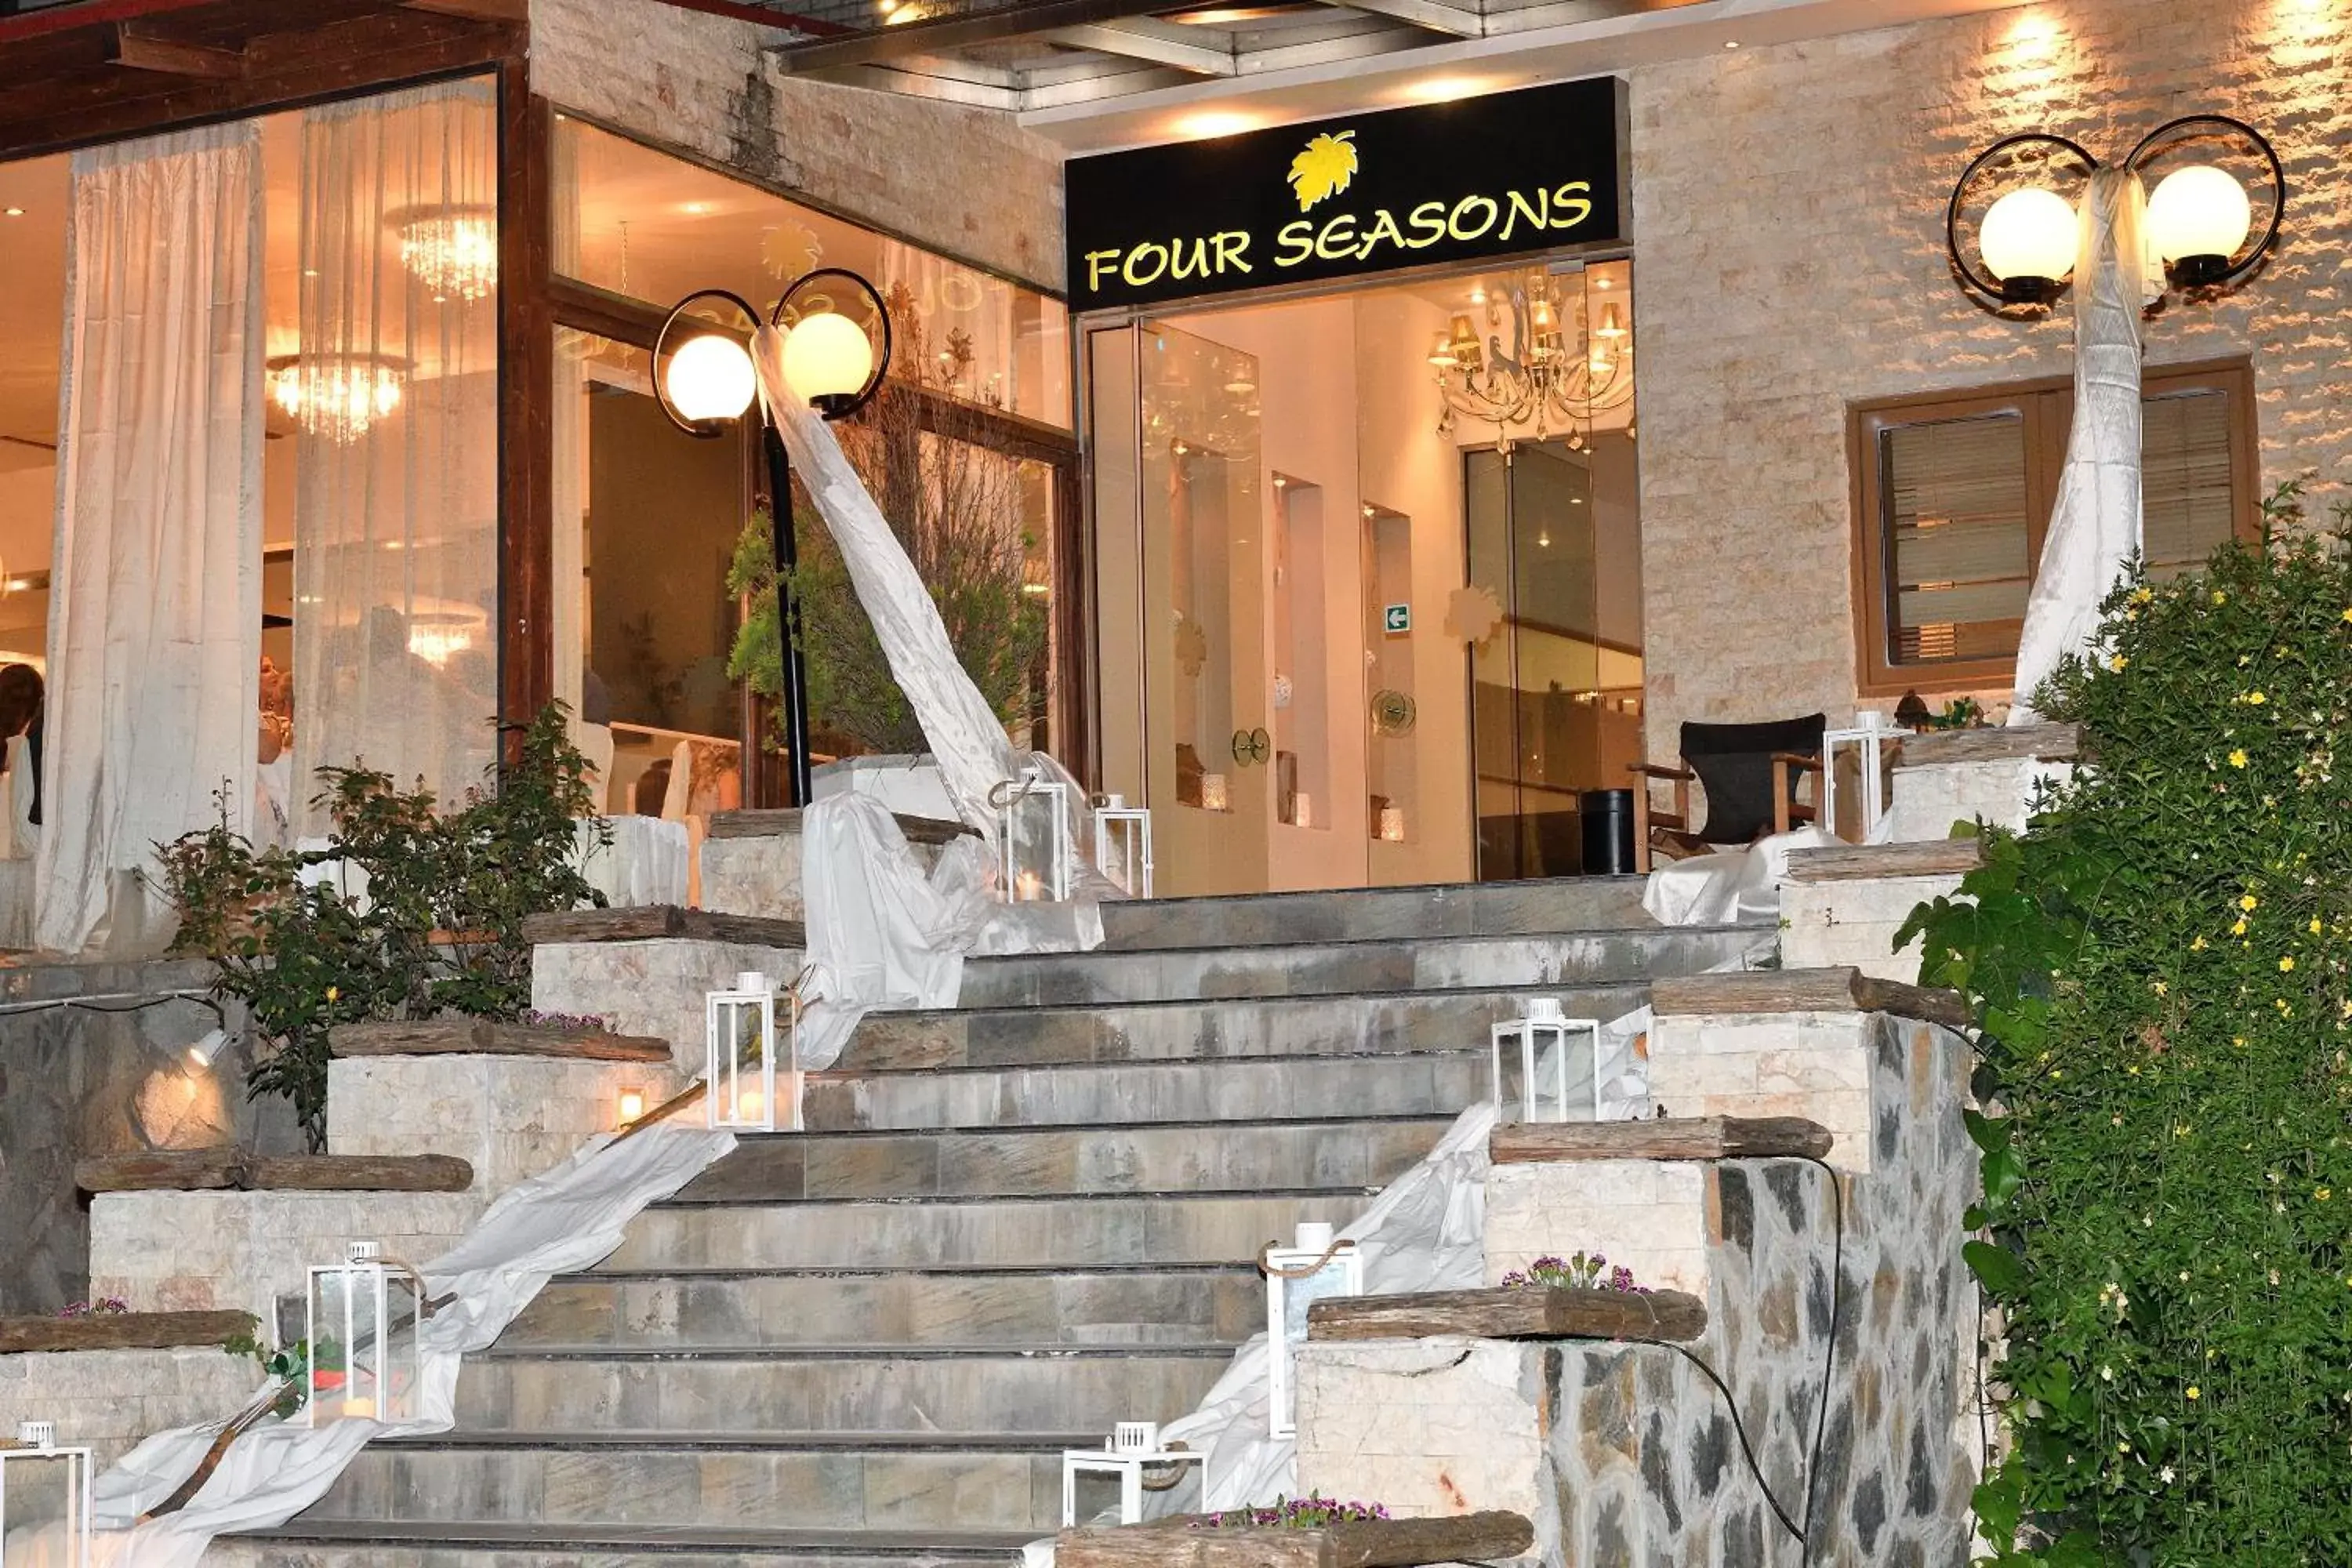 Facade/entrance in Four Seasons Hotel